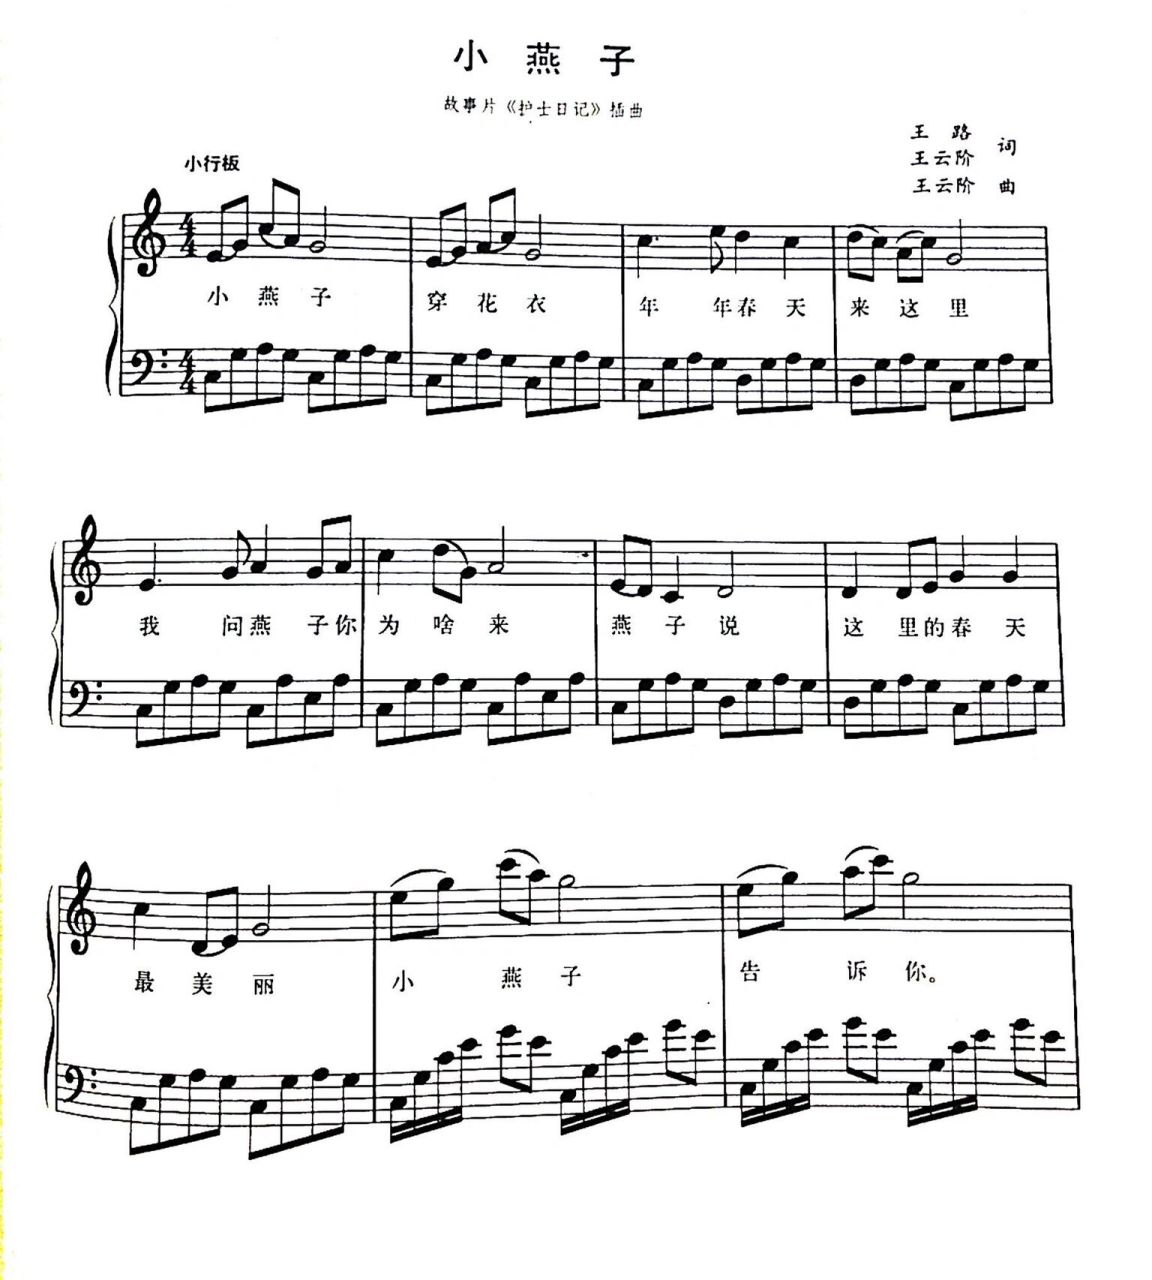 【钢琴】弹奏儿歌:《小燕子》简谱及五线谱